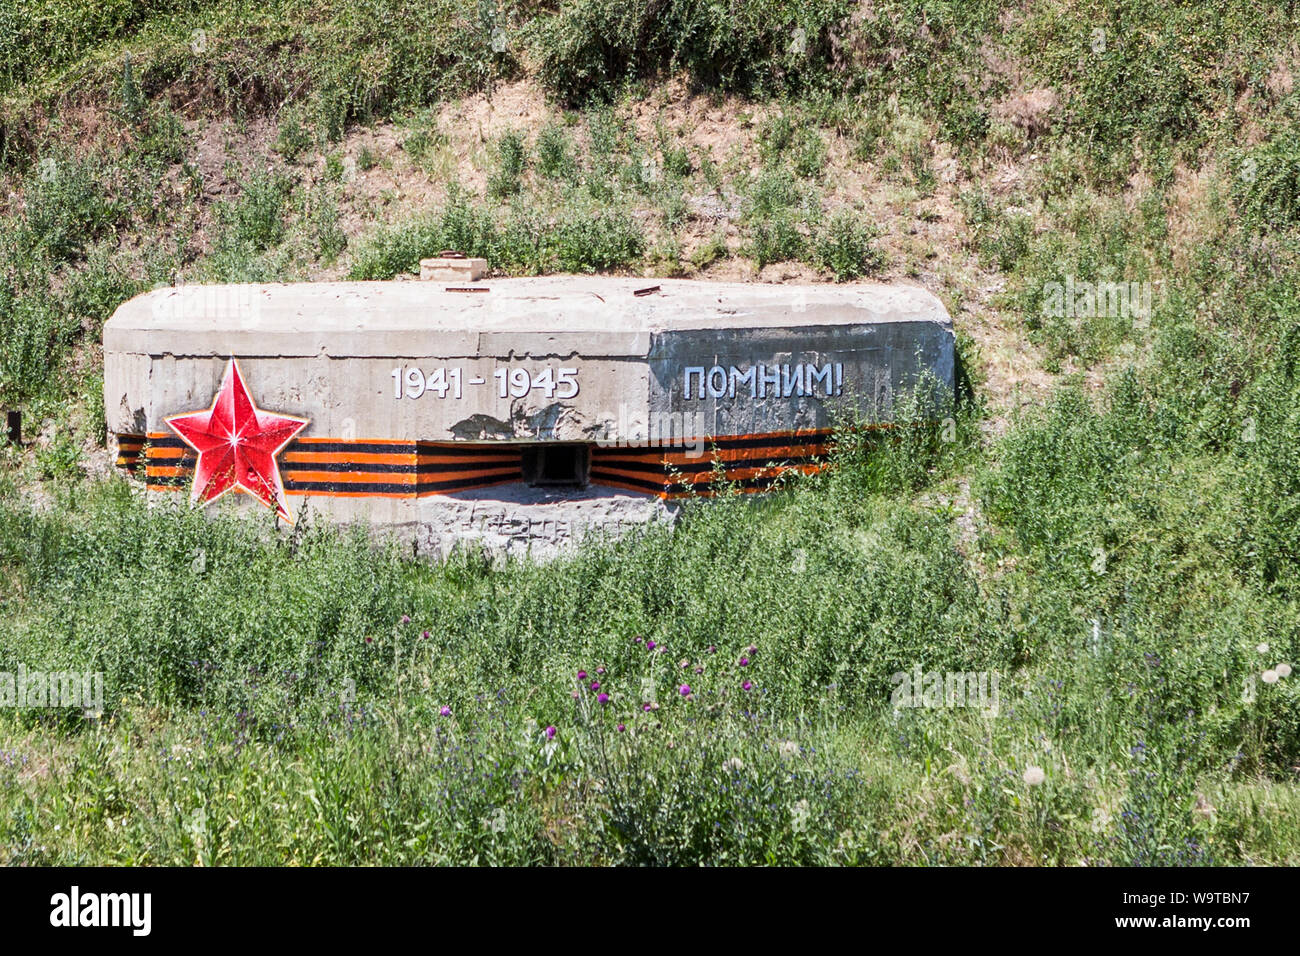 Lenin sowjetischen Bunker mit Logo speichern' 1941-1945", Transnistrien Moldawien Stockfoto